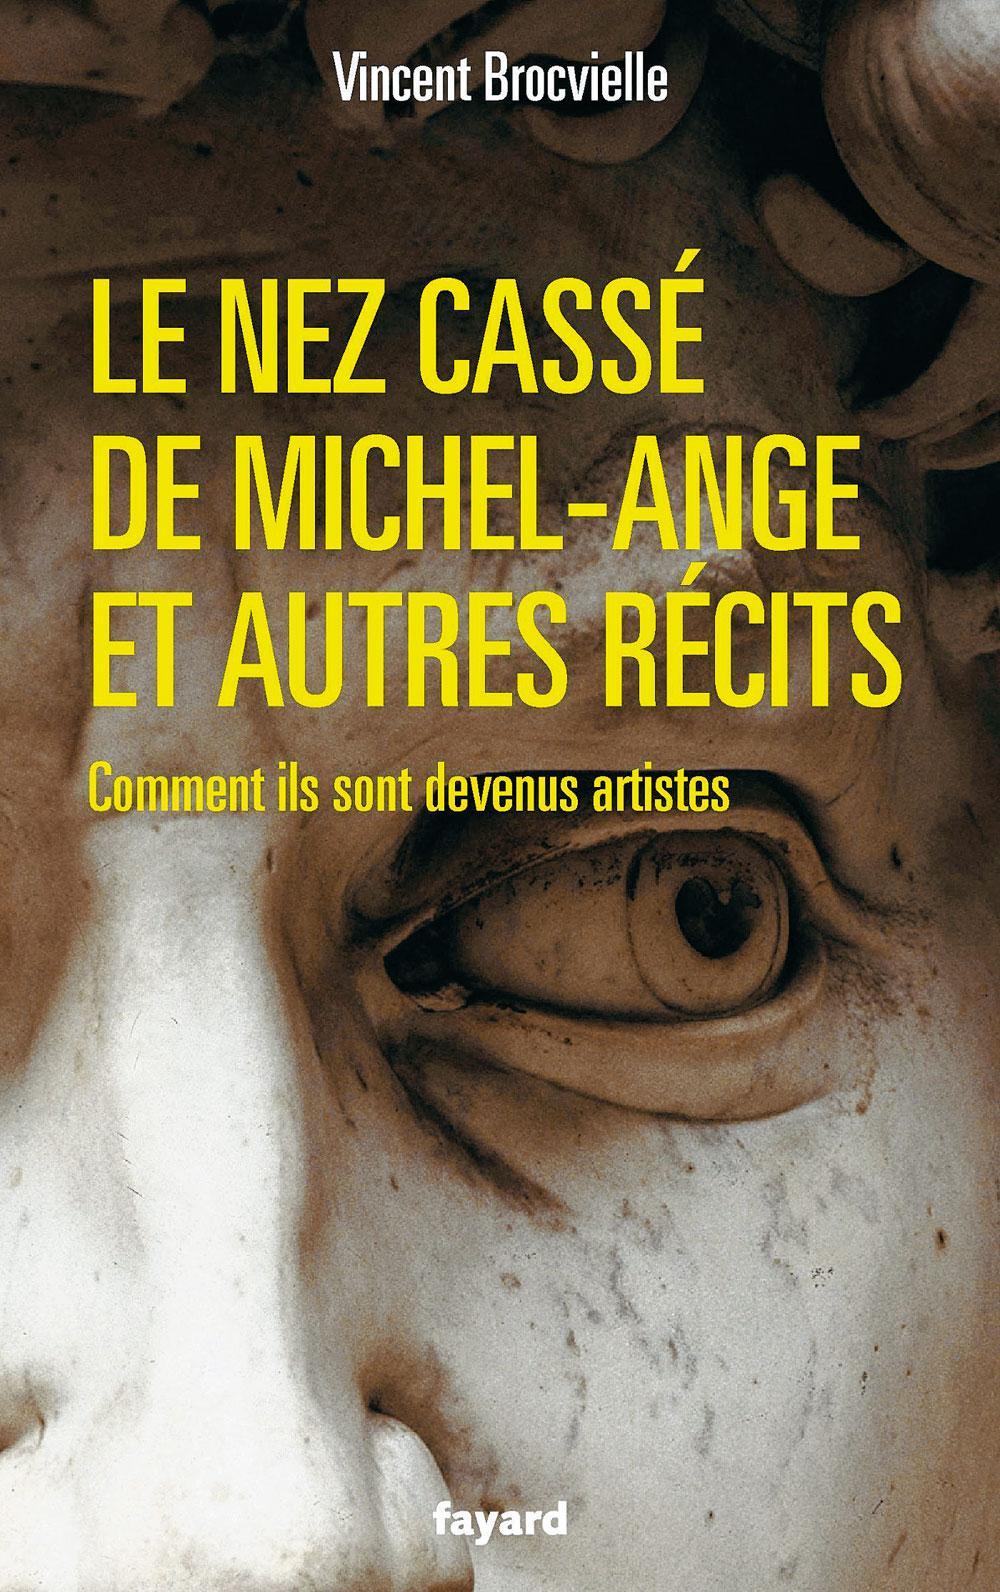 Le Nez cassé de Michel-Ange et autres récits, par Vincent Brocvielle, Fayard, 188 p.